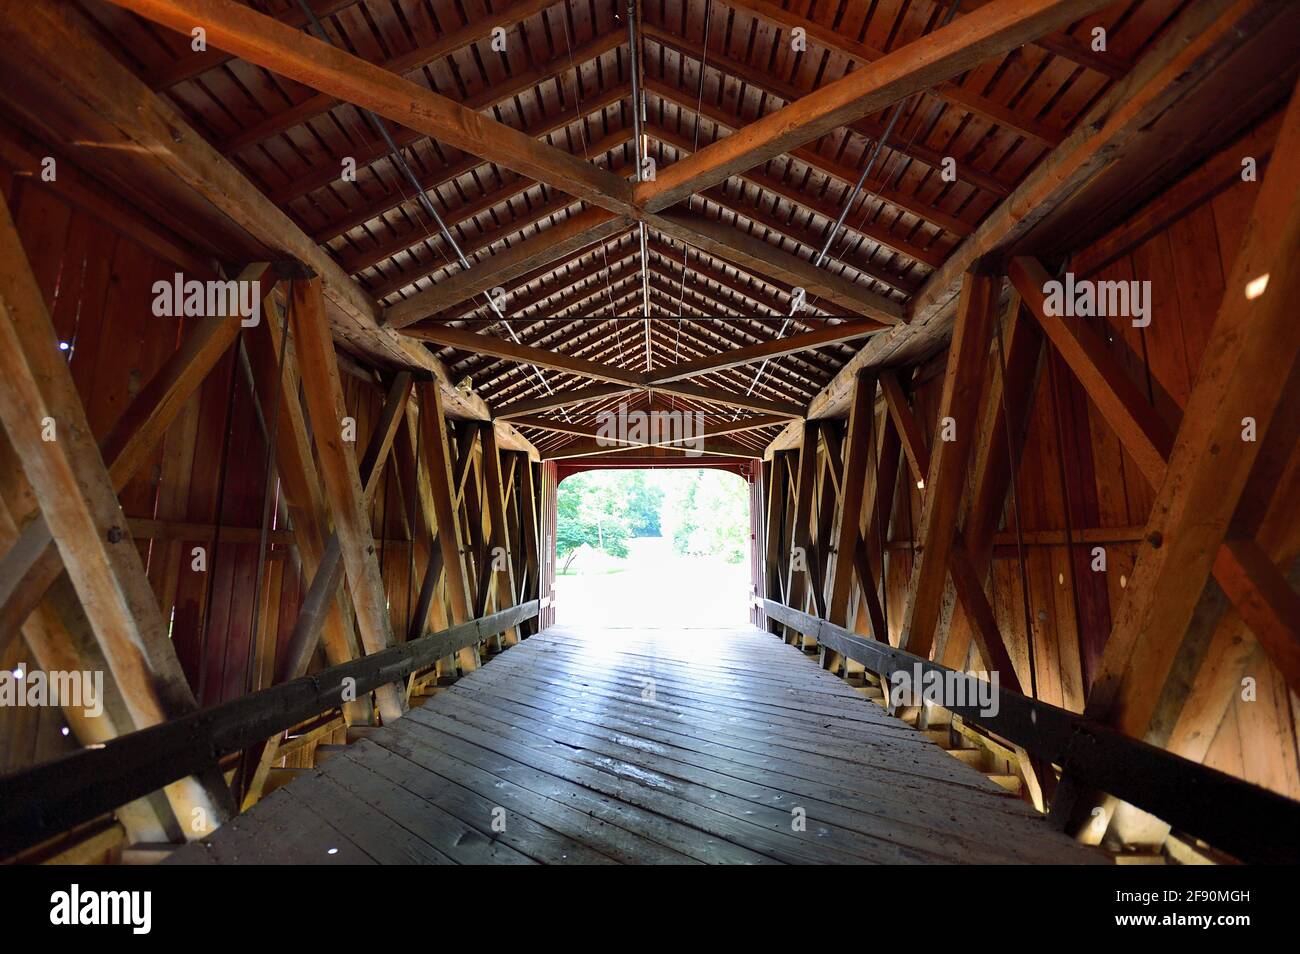 Princeton, Illinois, Stati Uniti. La cornice interna in legno del Red Covered Bridge che attraversa Big Bureau Creek. Il ponte di 149 metri è stato costruito nel 1863. Foto Stock